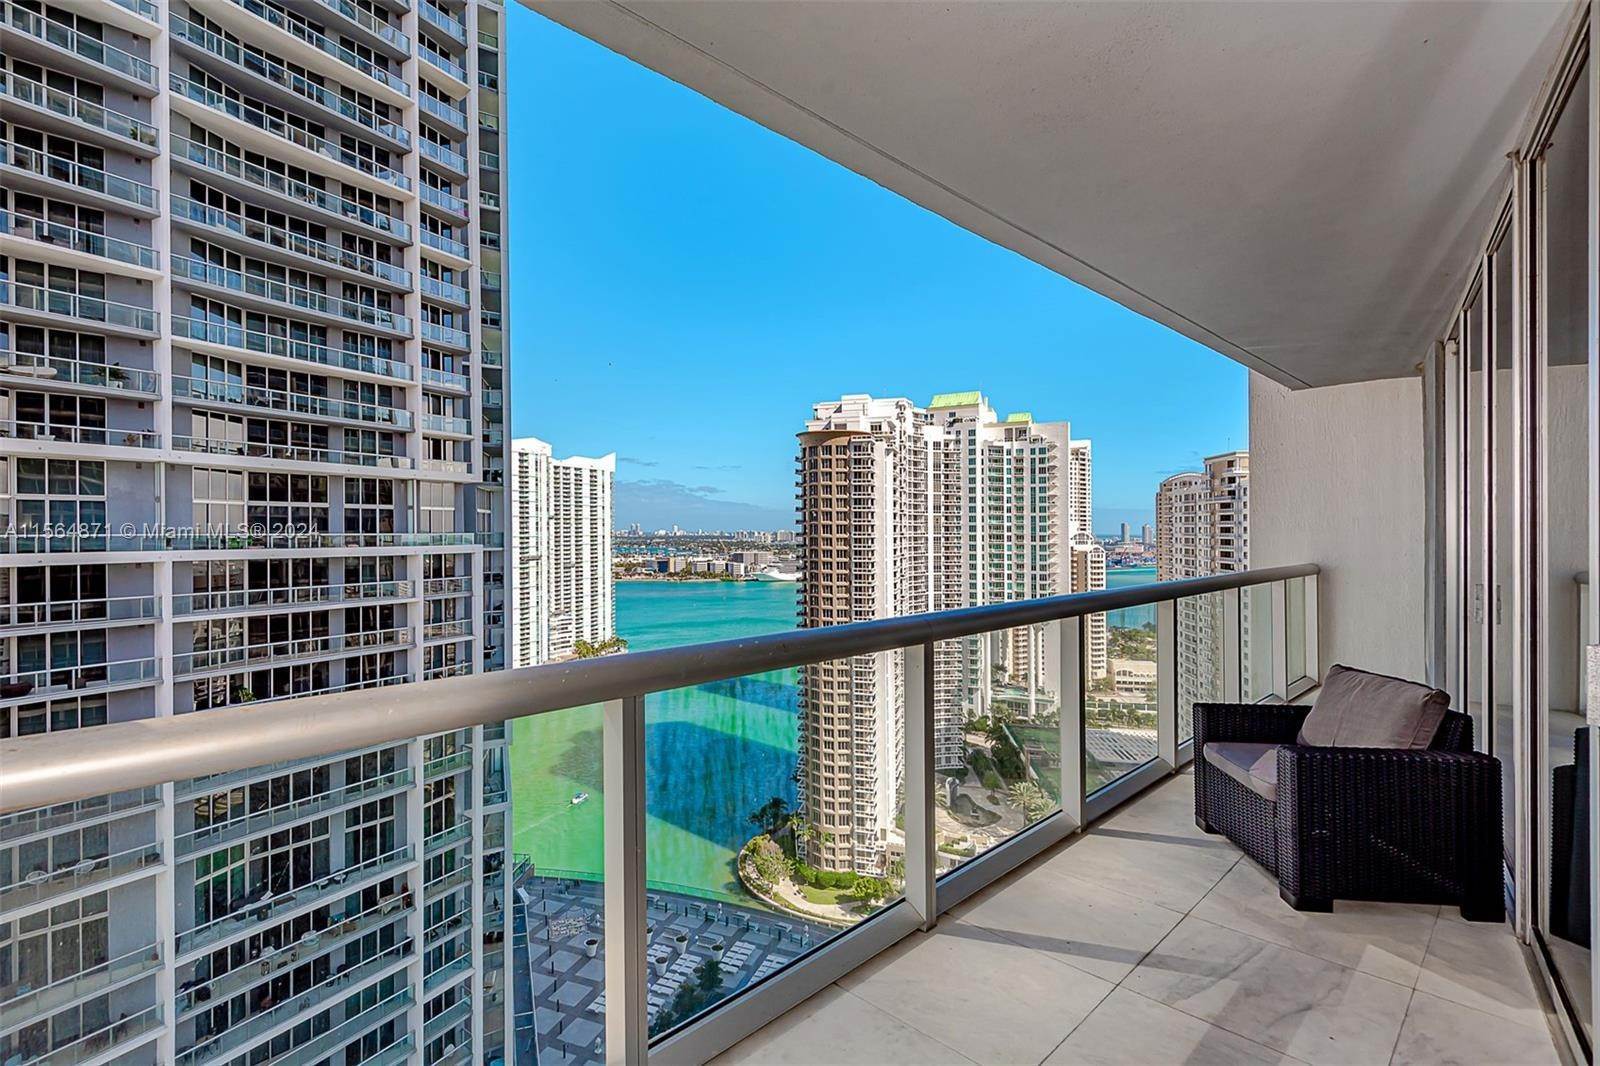 Condominium at Downtown Miami, Miami, FL 33131